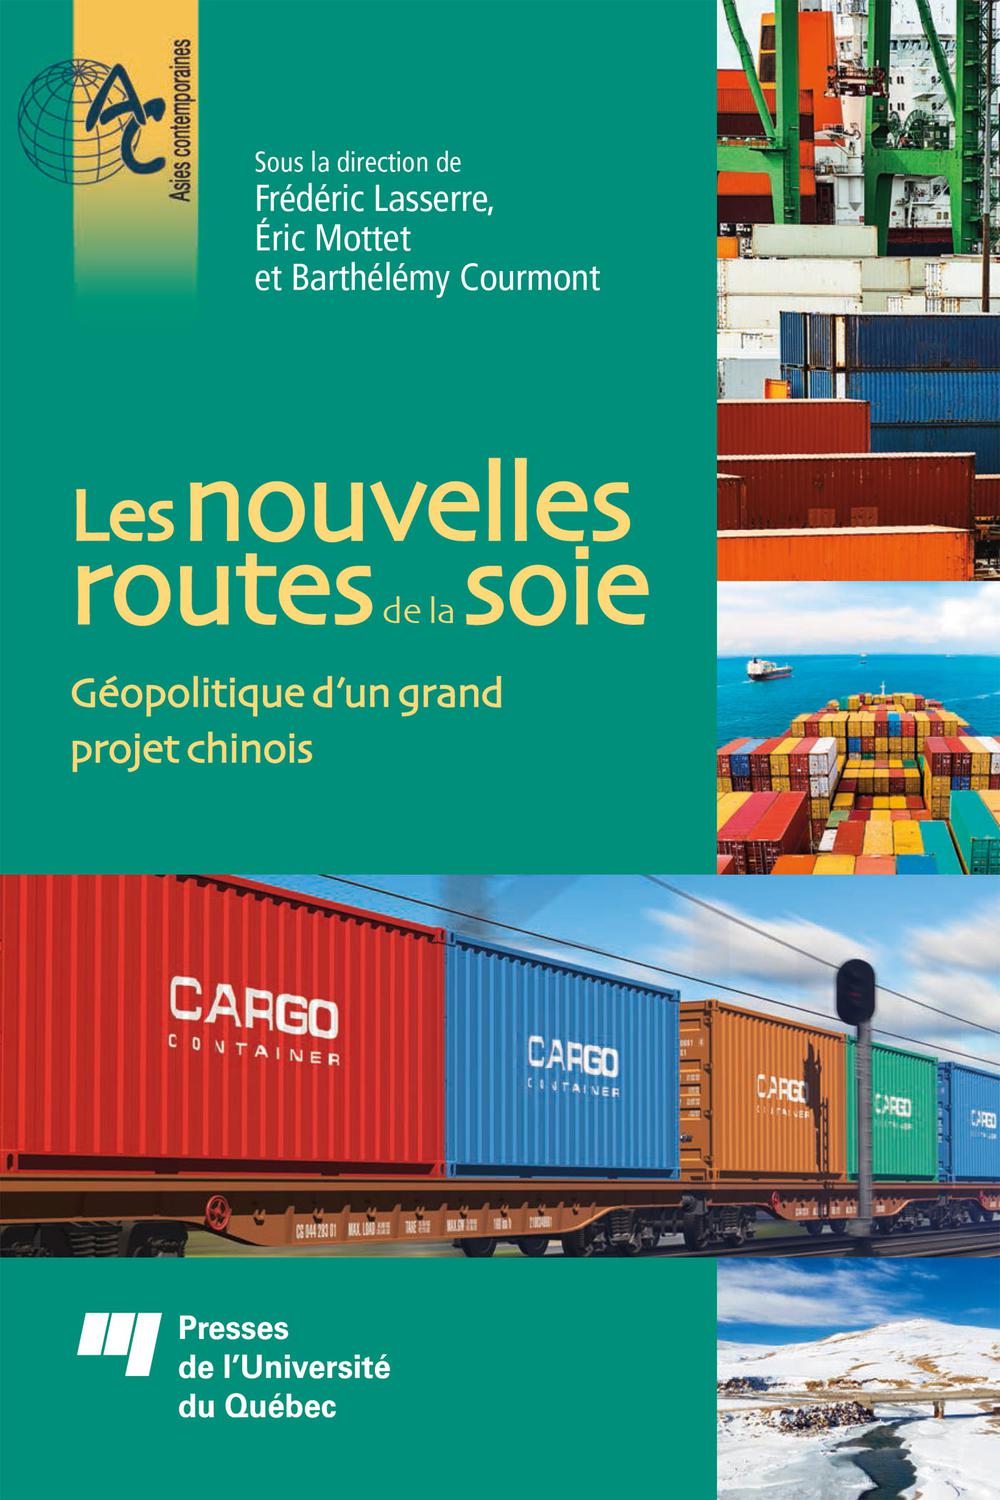 Les nouvelles routes de la soie - Frédéric Lasserre, Éric Mottet, Barthélémy Courmont